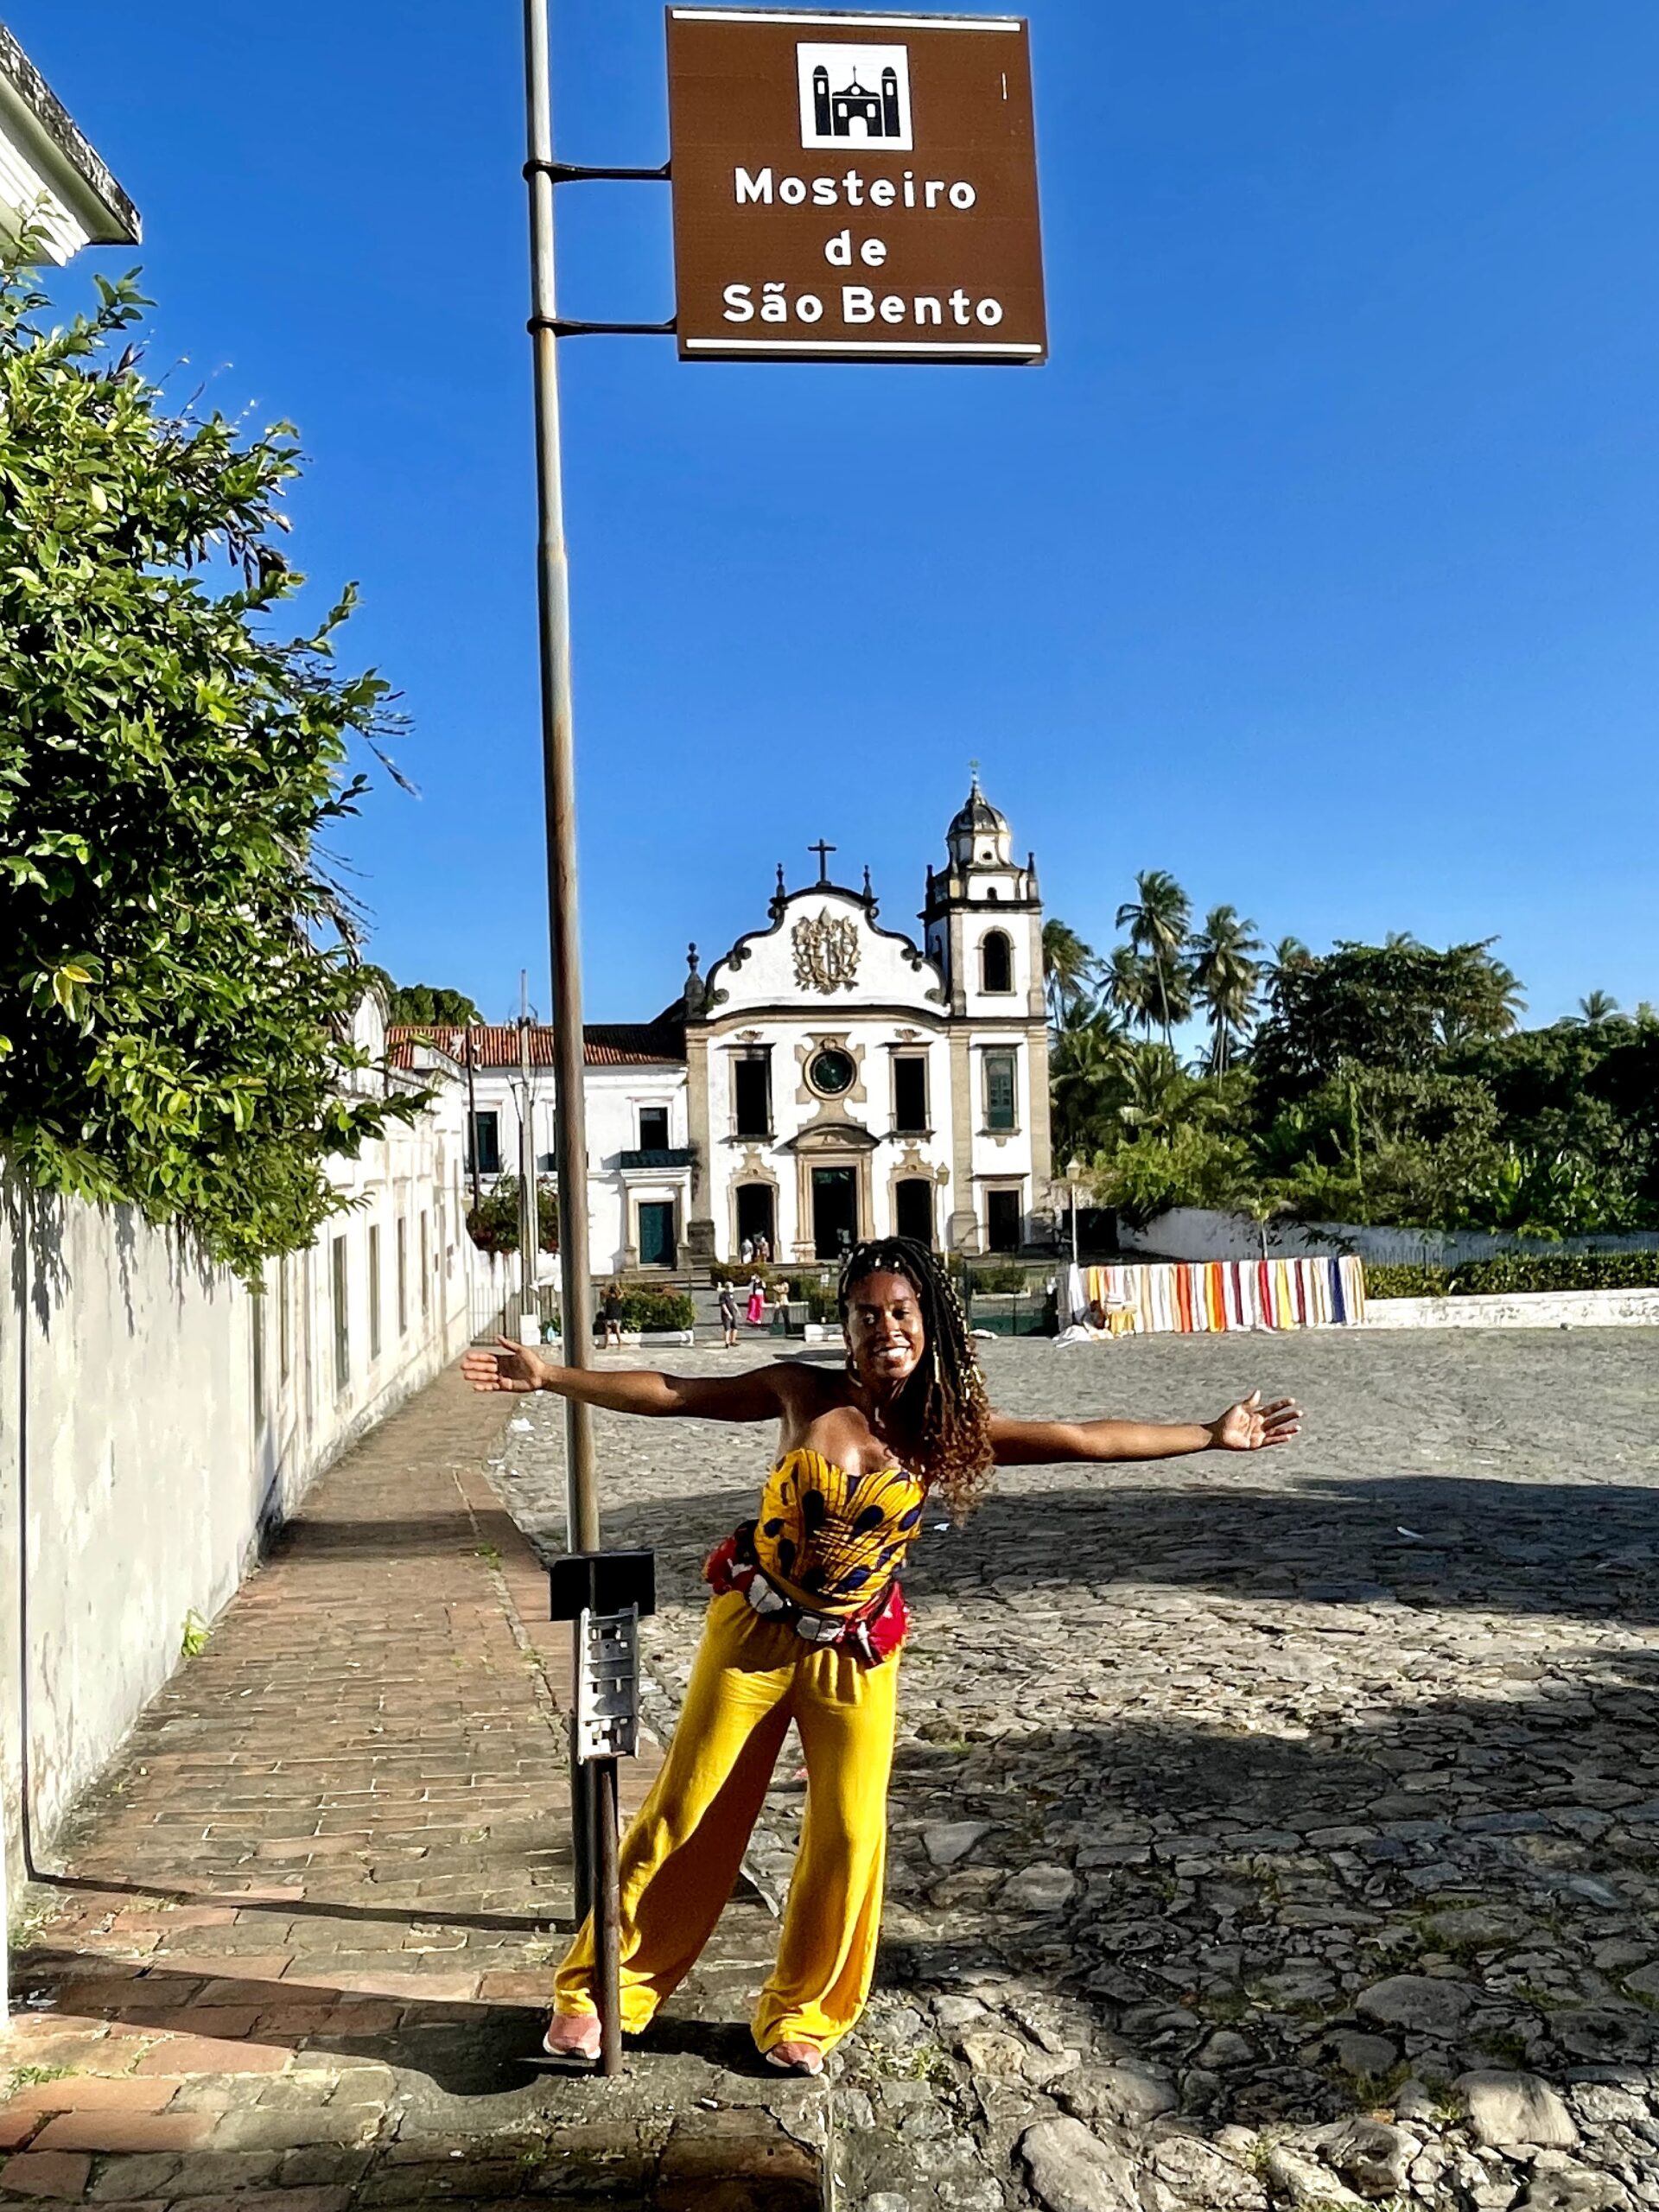 Mosteiro de São Bento - Olinda O que fazer em Olinda - foto arquivo pessoal de Rebecca ALetheia